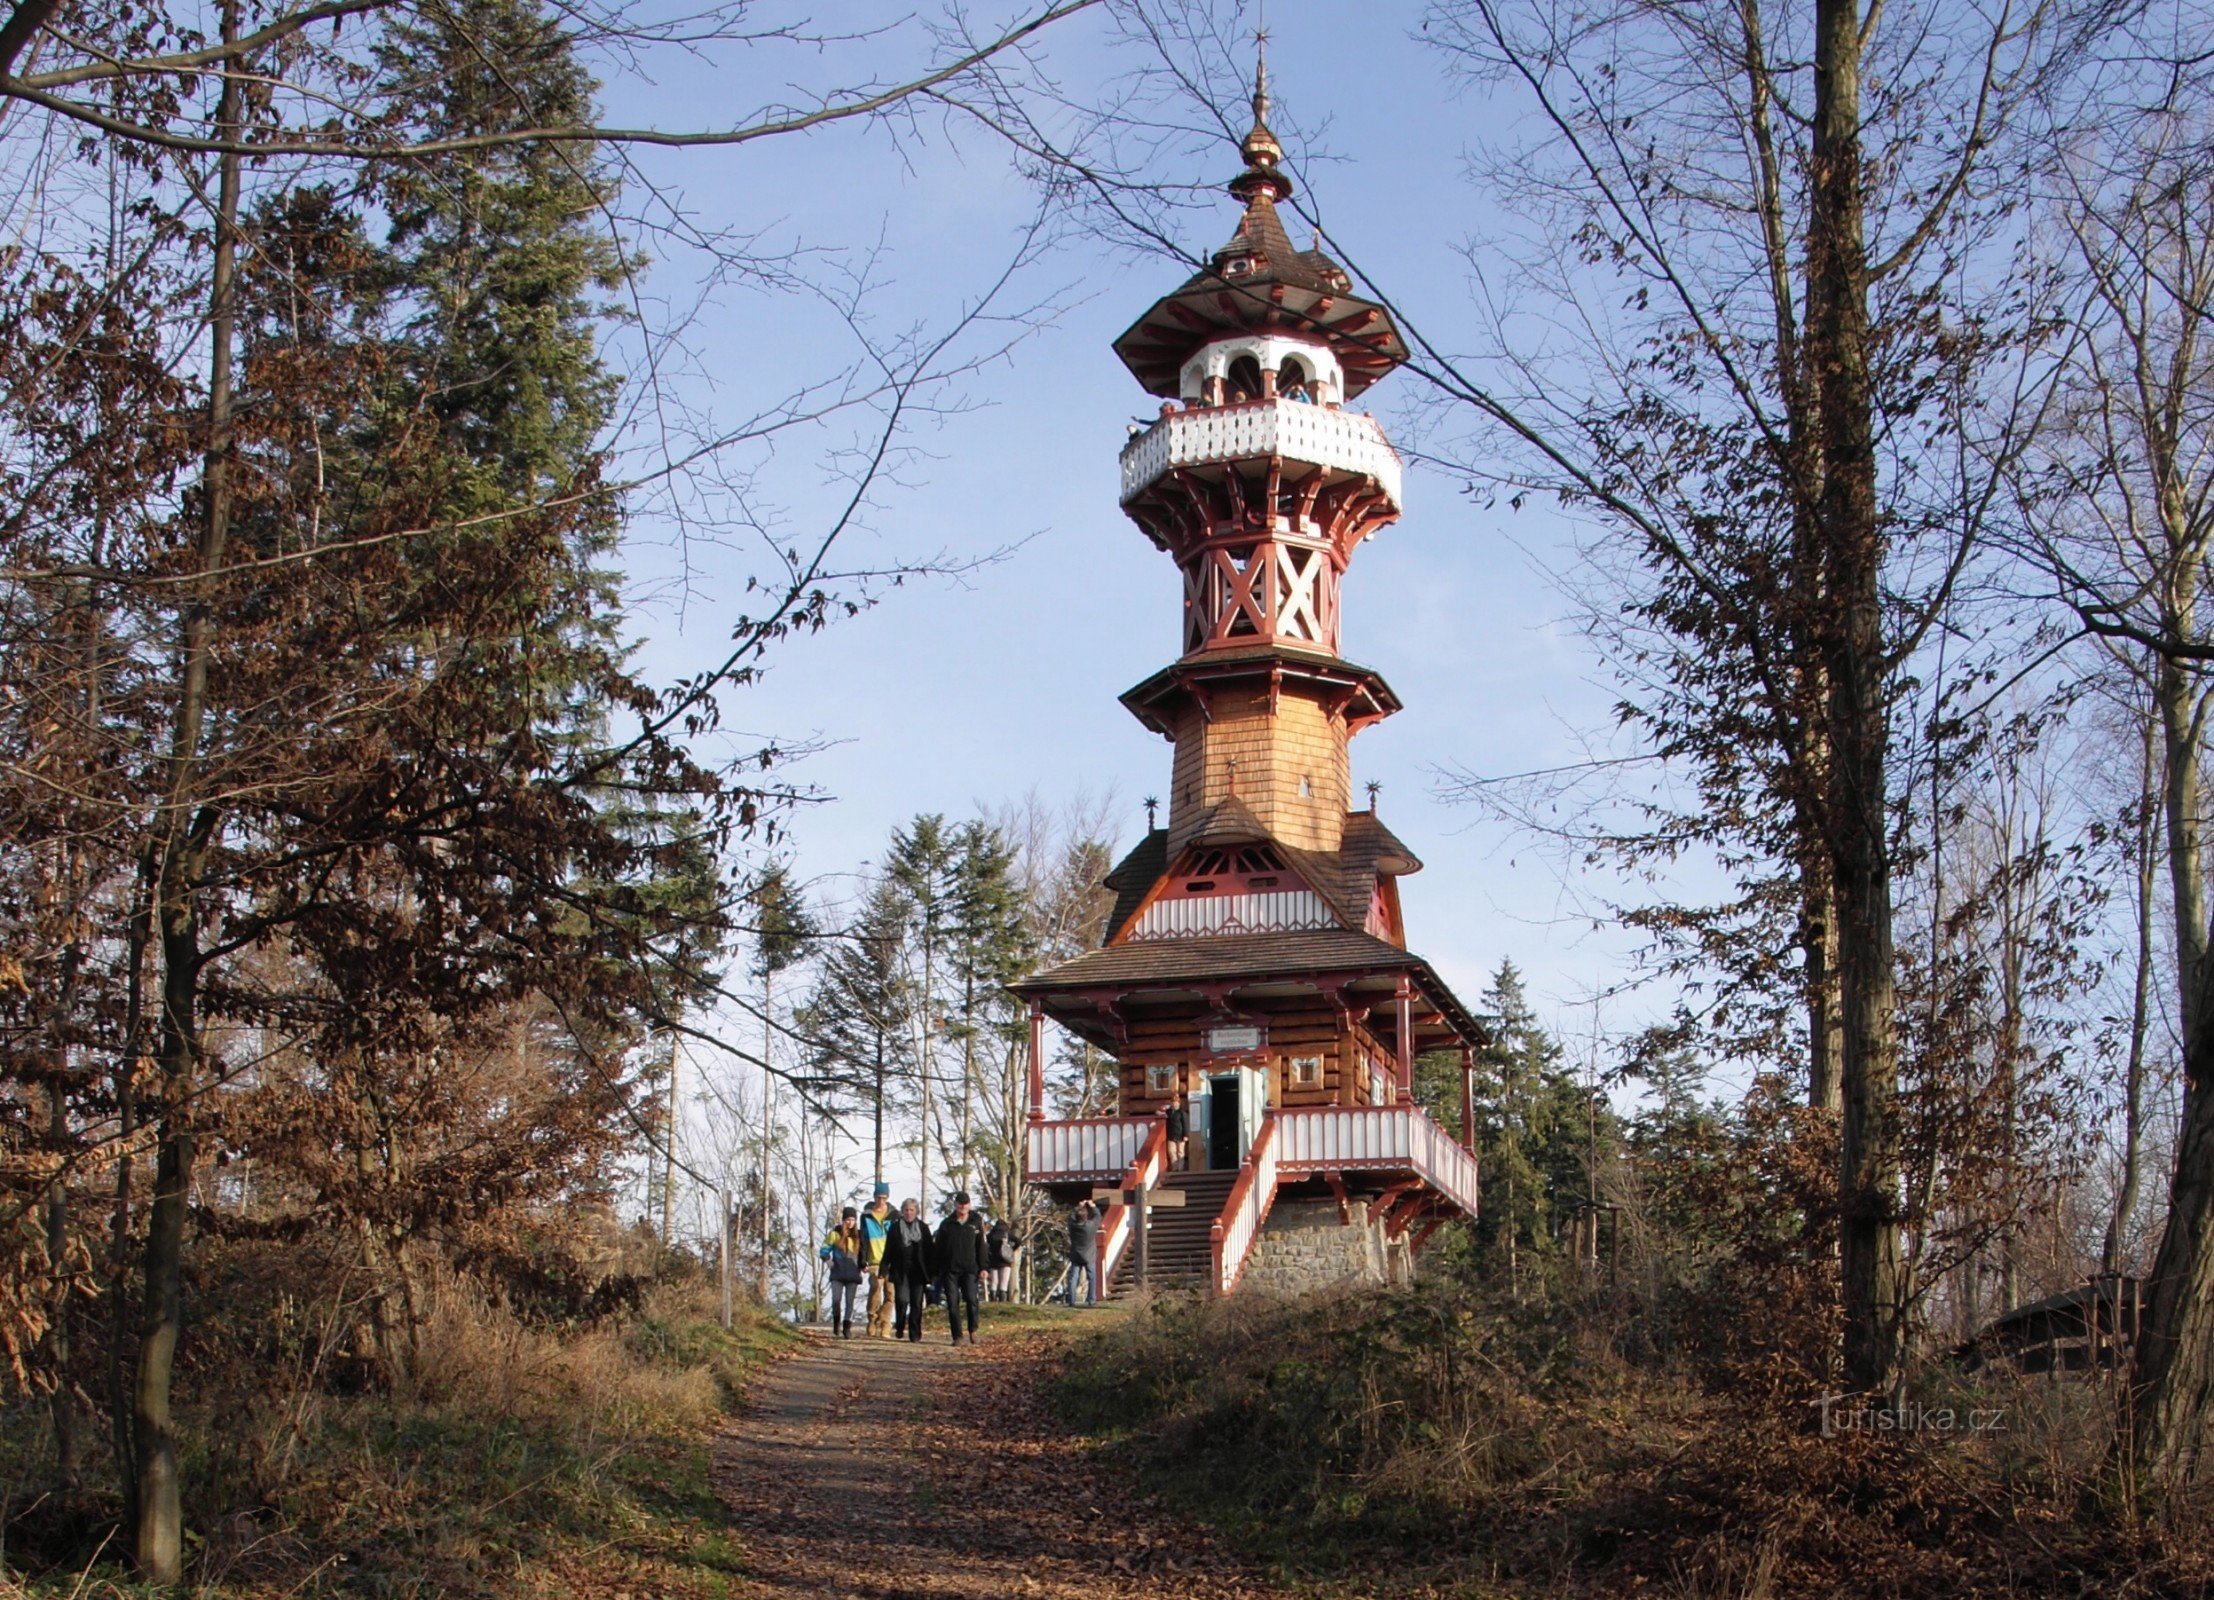 Karlův kopec près de Rožnov pod Radhoštěm - Tour d'observation de Jurkovič (statistiques, histoire